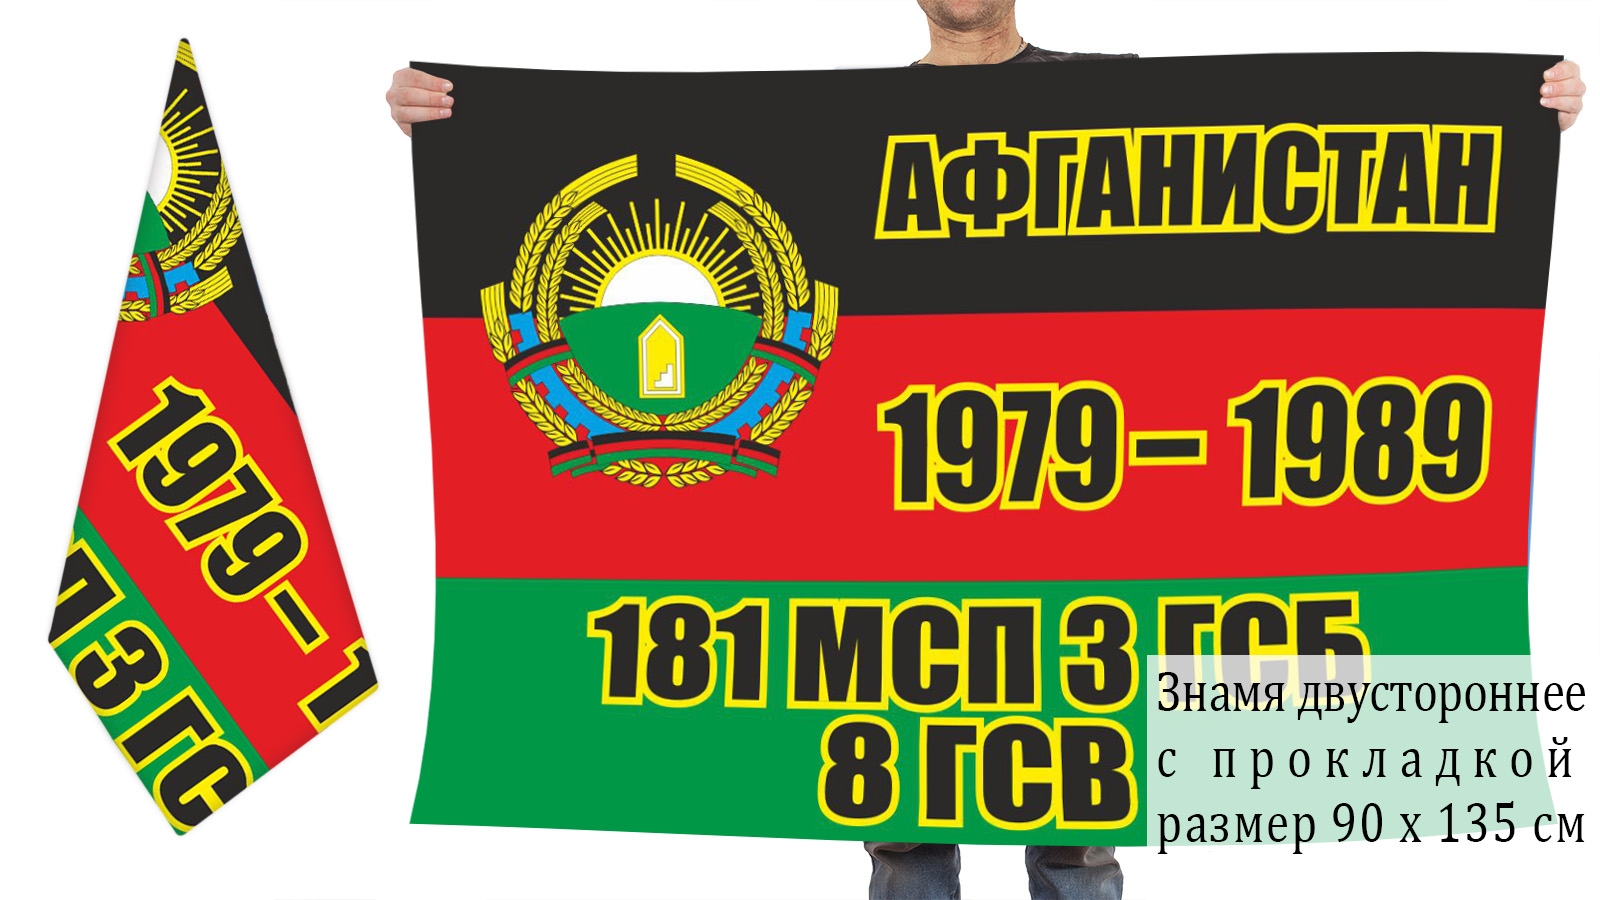 Двусторонний флаг 181 МСП 3 ГСБ 8 ГСВ